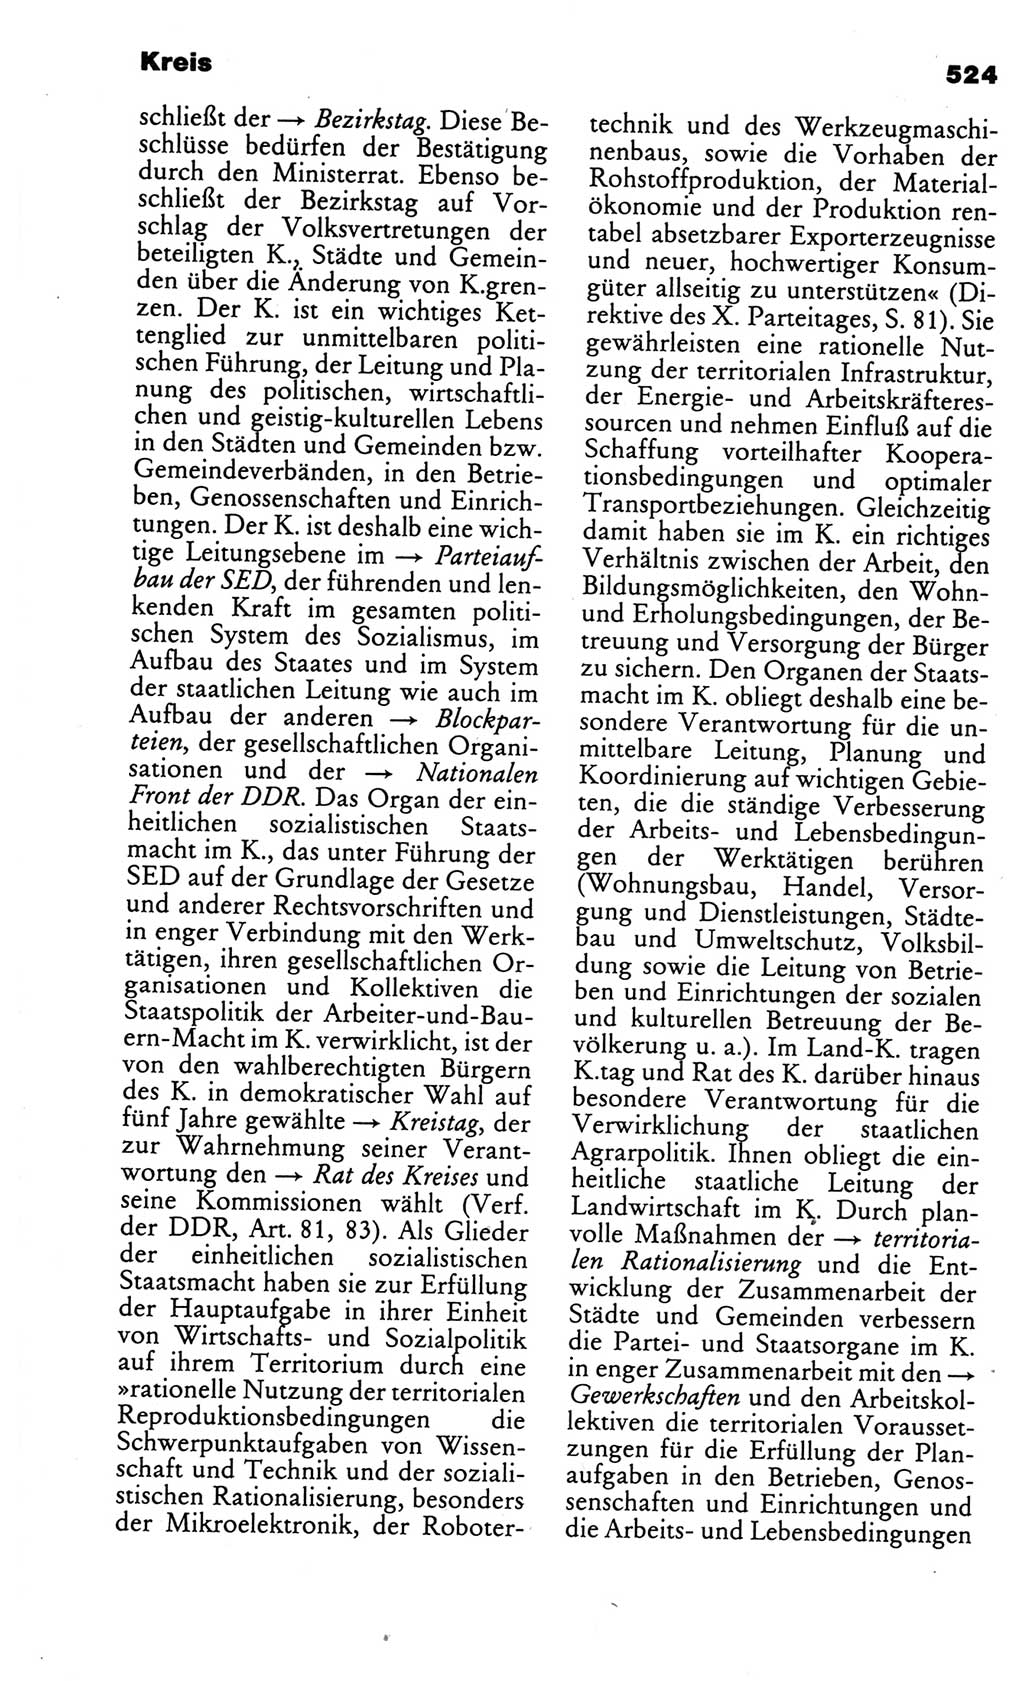 Kleines politisches Wörterbuch [Deutsche Demokratische Republik (DDR)] 1986, Seite 524 (Kl. pol. Wb. DDR 1986, S. 524)